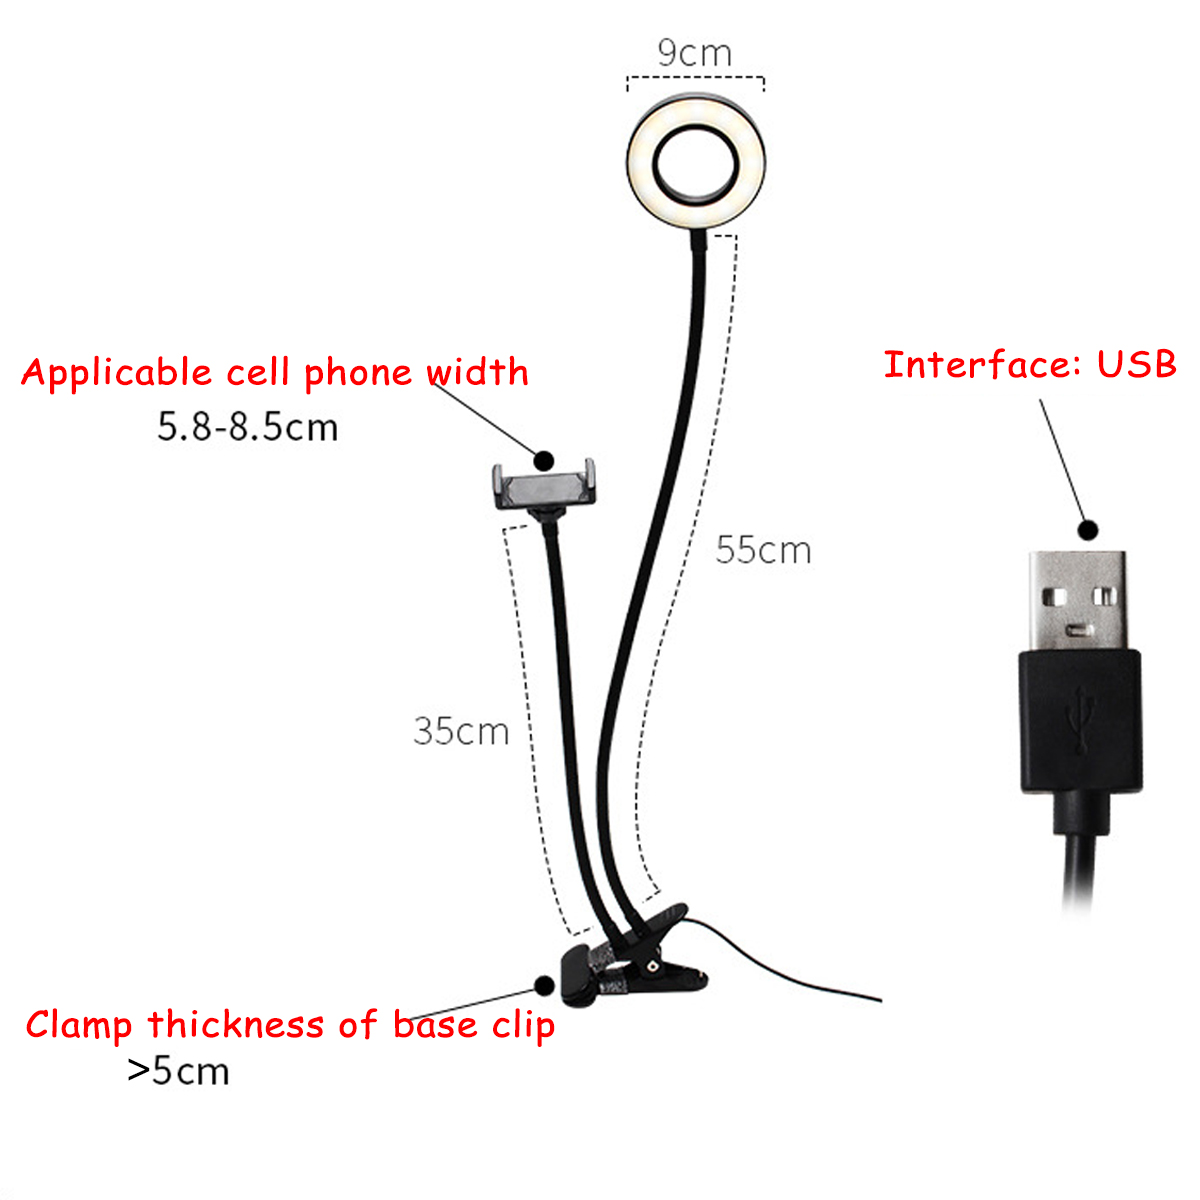 BG12W-2-in-1-Flexible-Controllable-USB-Interface-9cm-12W-LED-Selfie-Ring-Light--Desktop-Phone-Holder-1688720-2